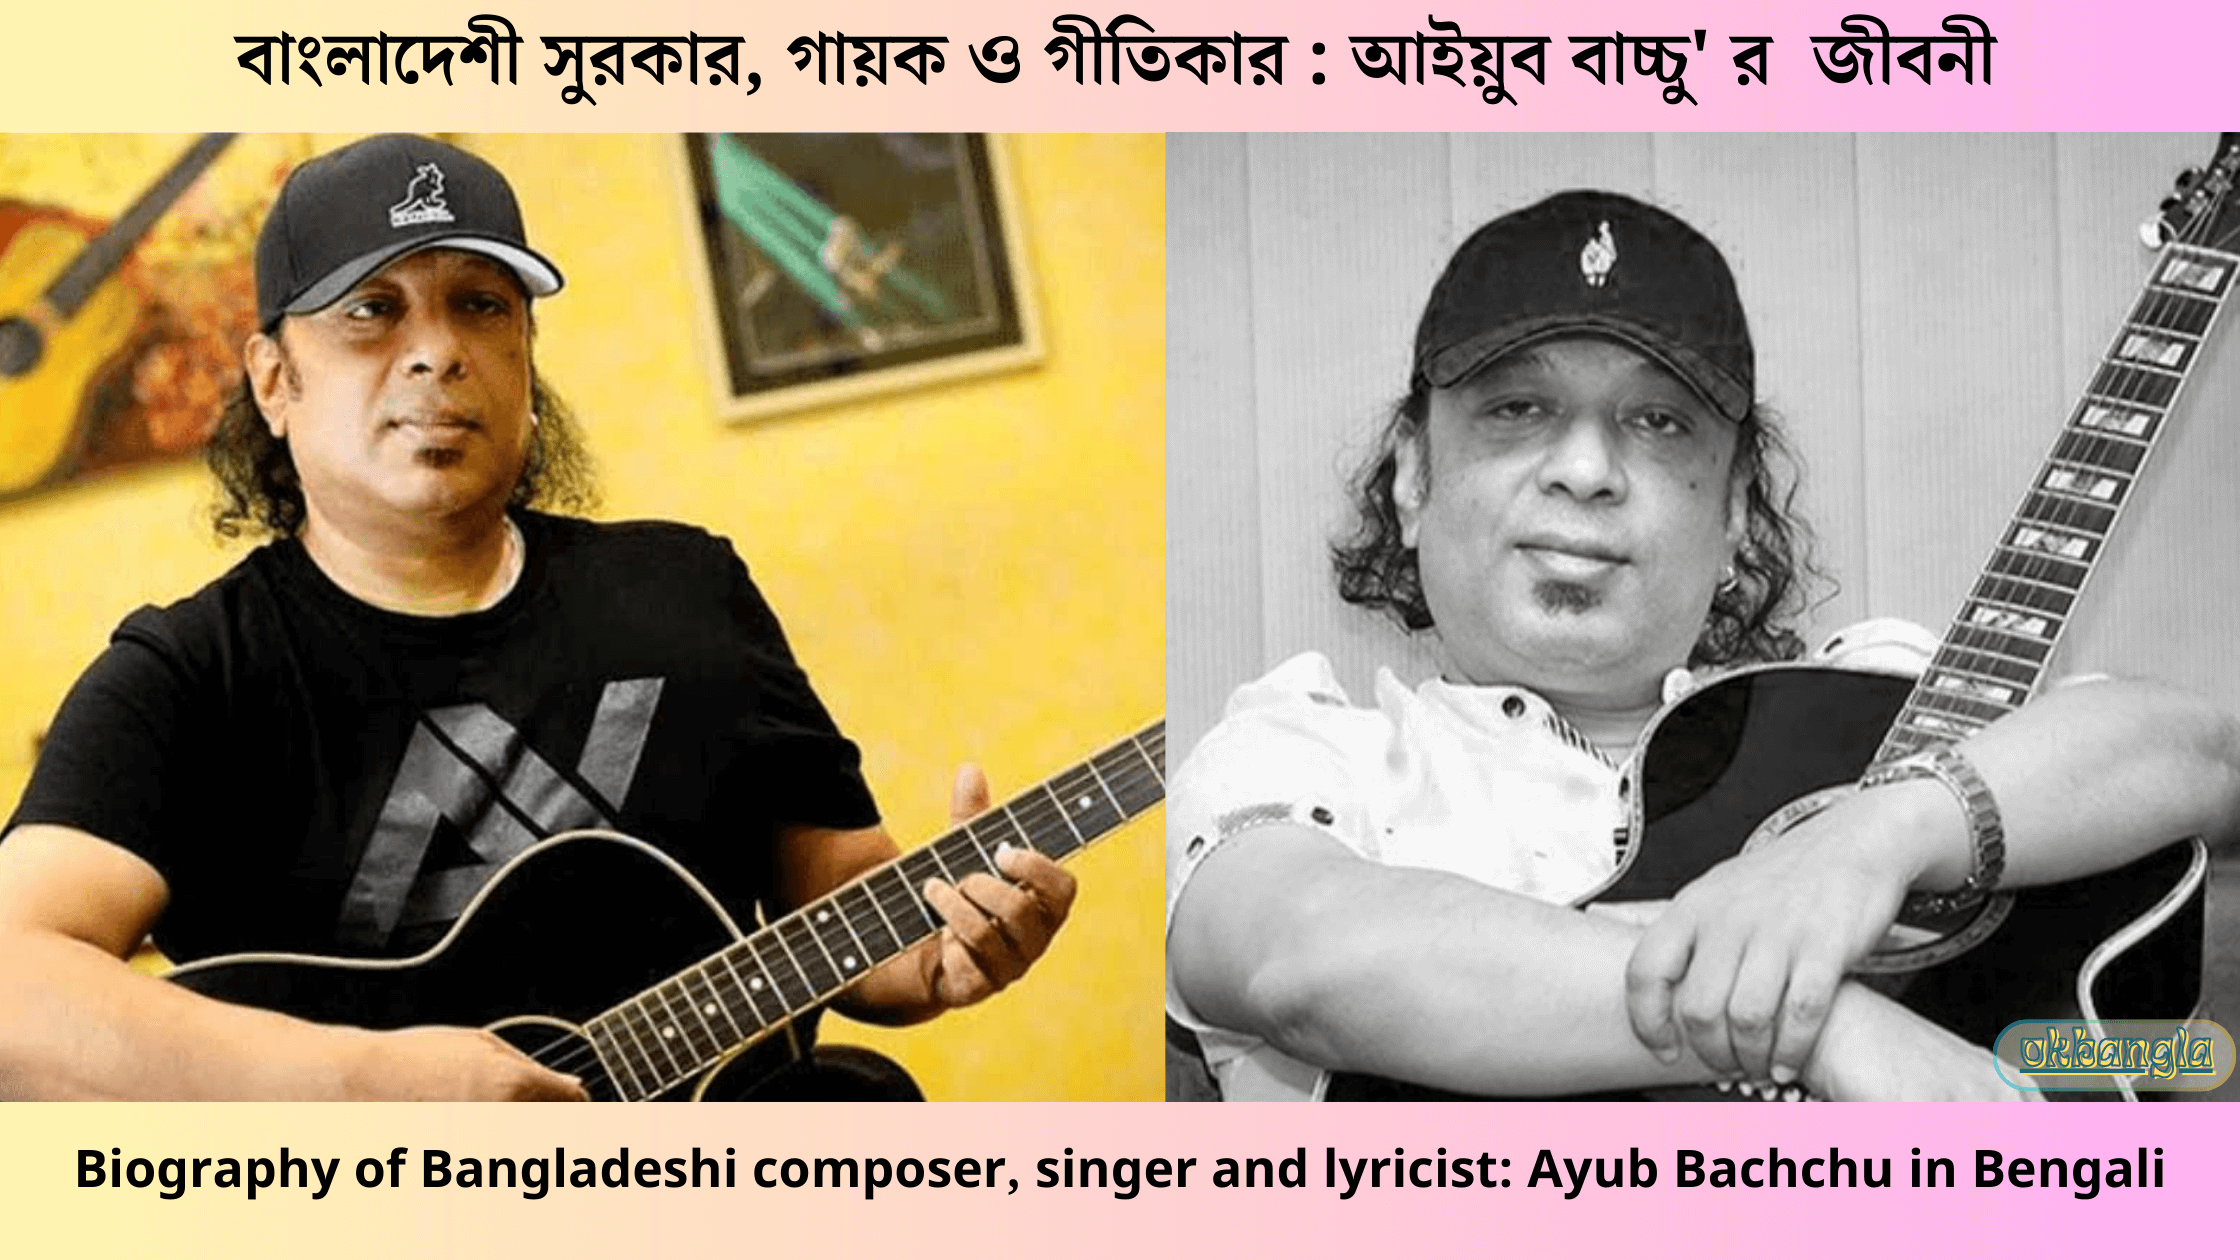 বাংলাদেশী সুরকার, গায়ক ও গীতিকার : আইয়ুব বাচ্চু' র জীবনী